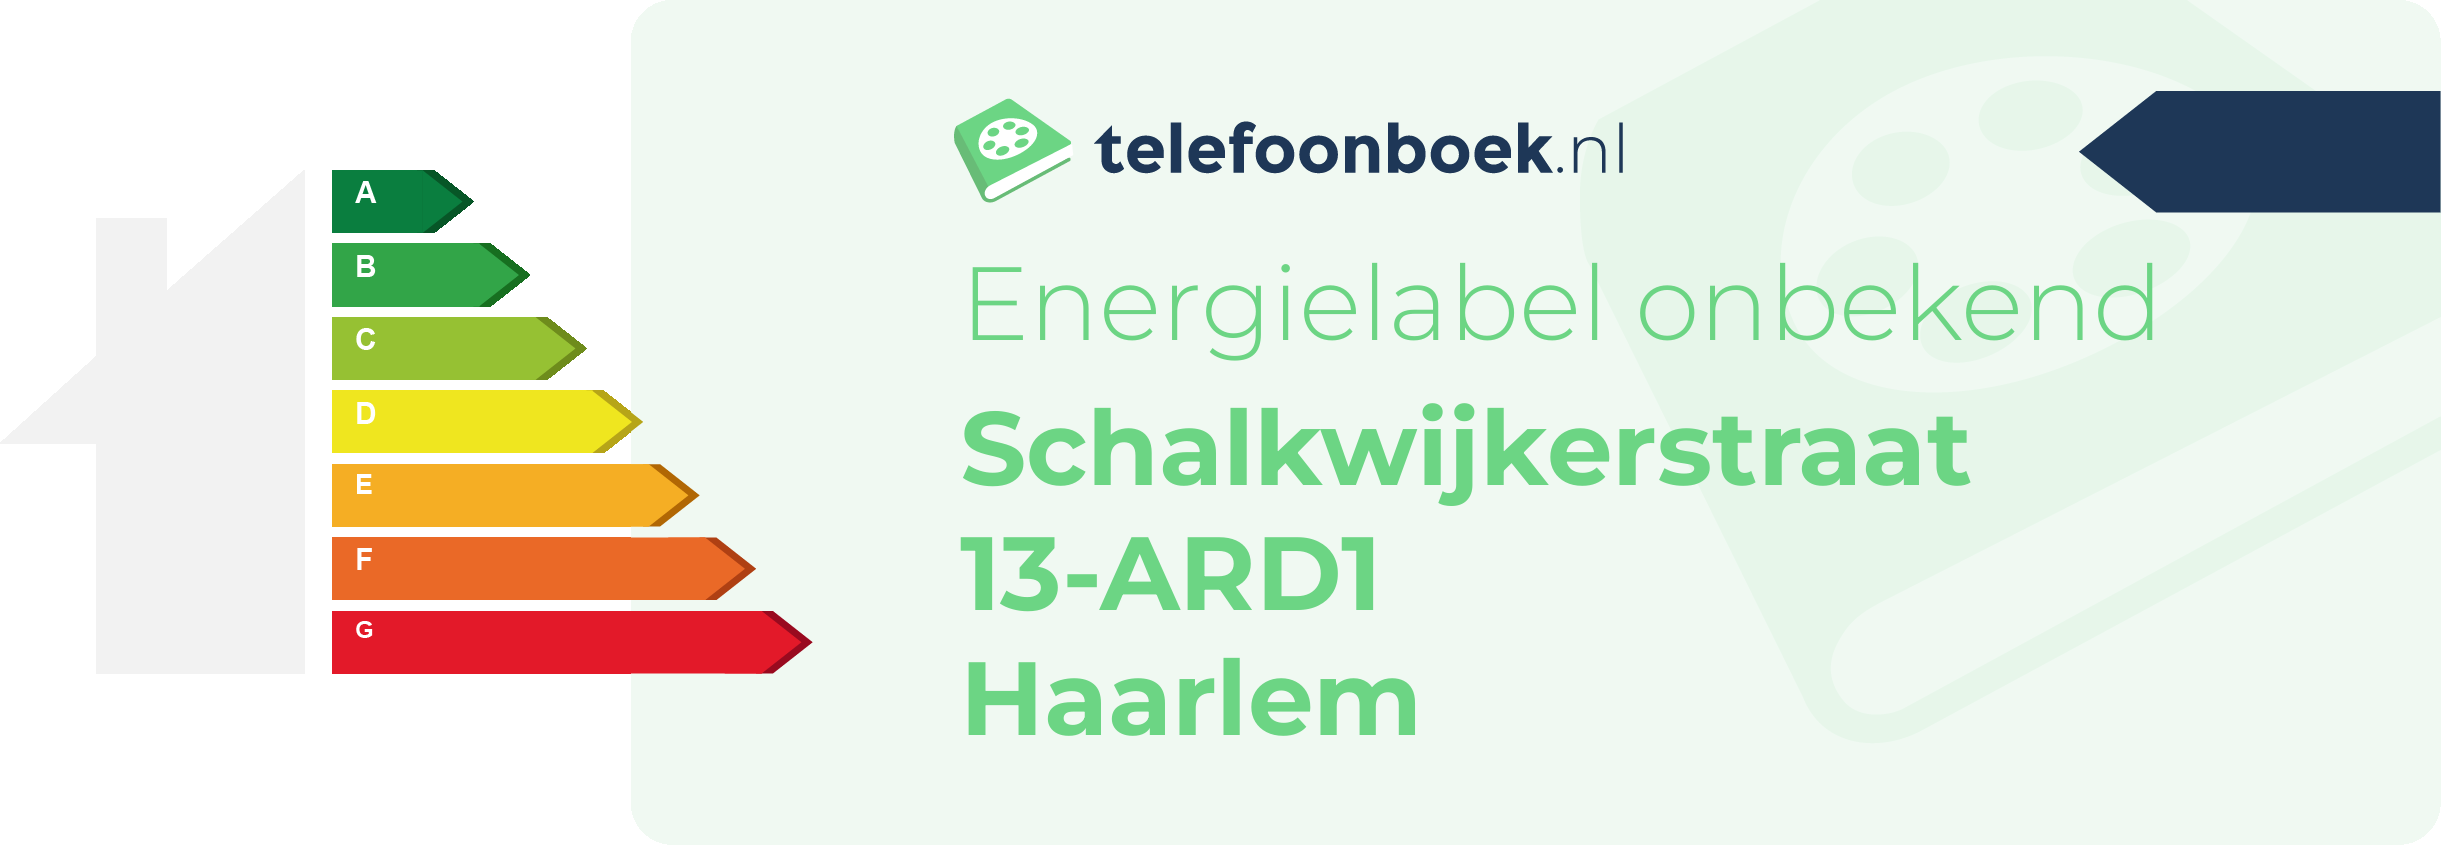 Energielabel Schalkwijkerstraat 13-ARD1 Haarlem